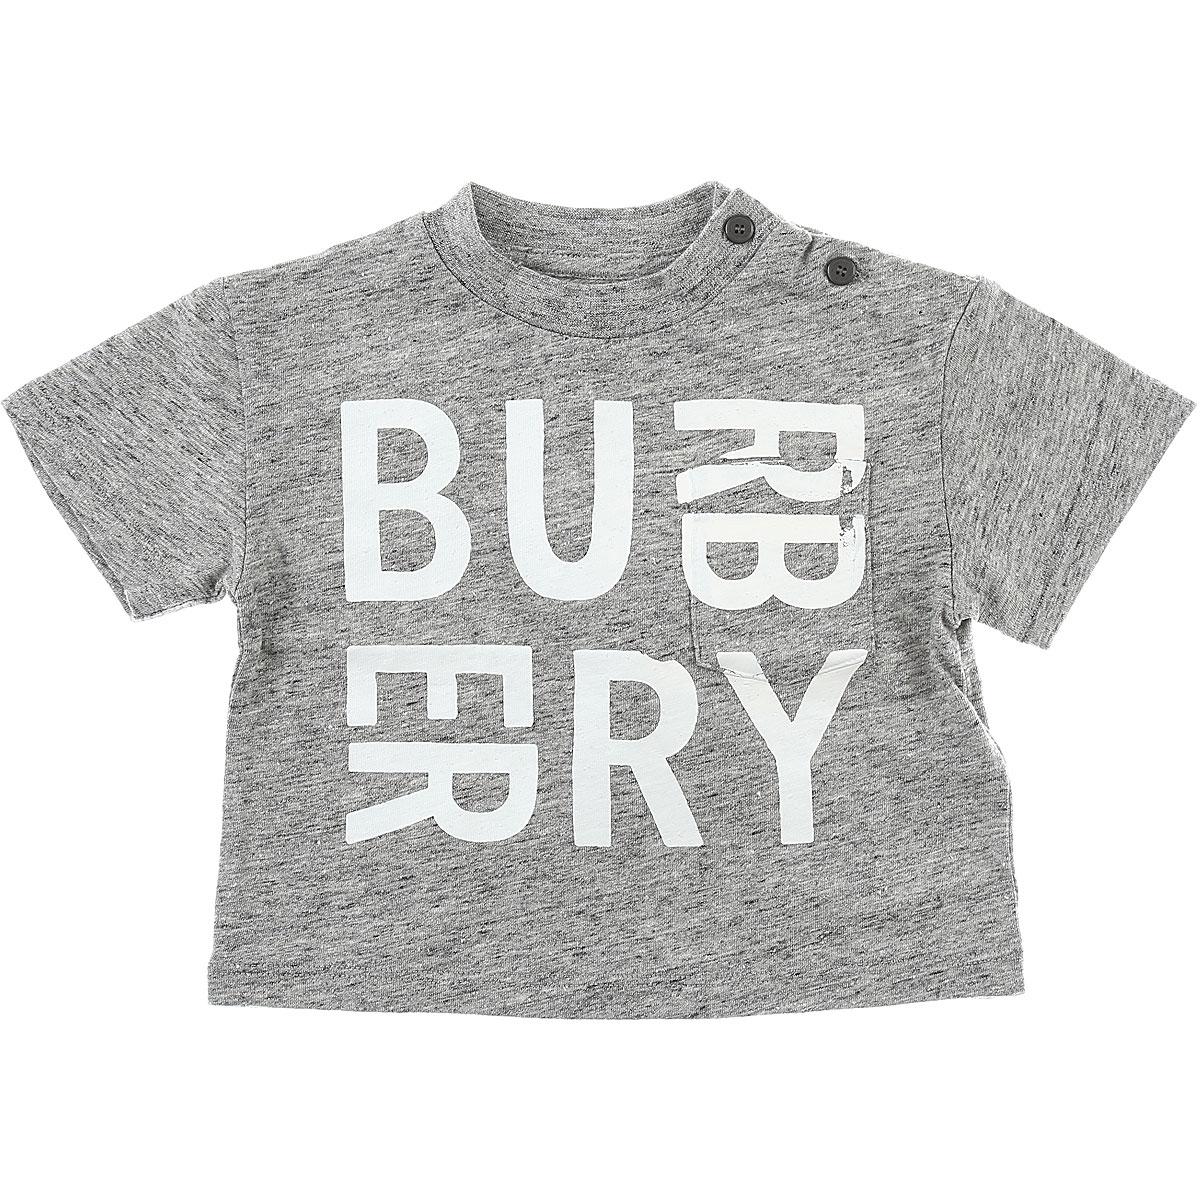 Burberry Baby T-Shirt für Jungen Günstig im Outlet Sale, Grau Melange, Baumwolle, 2017, 18M 6M